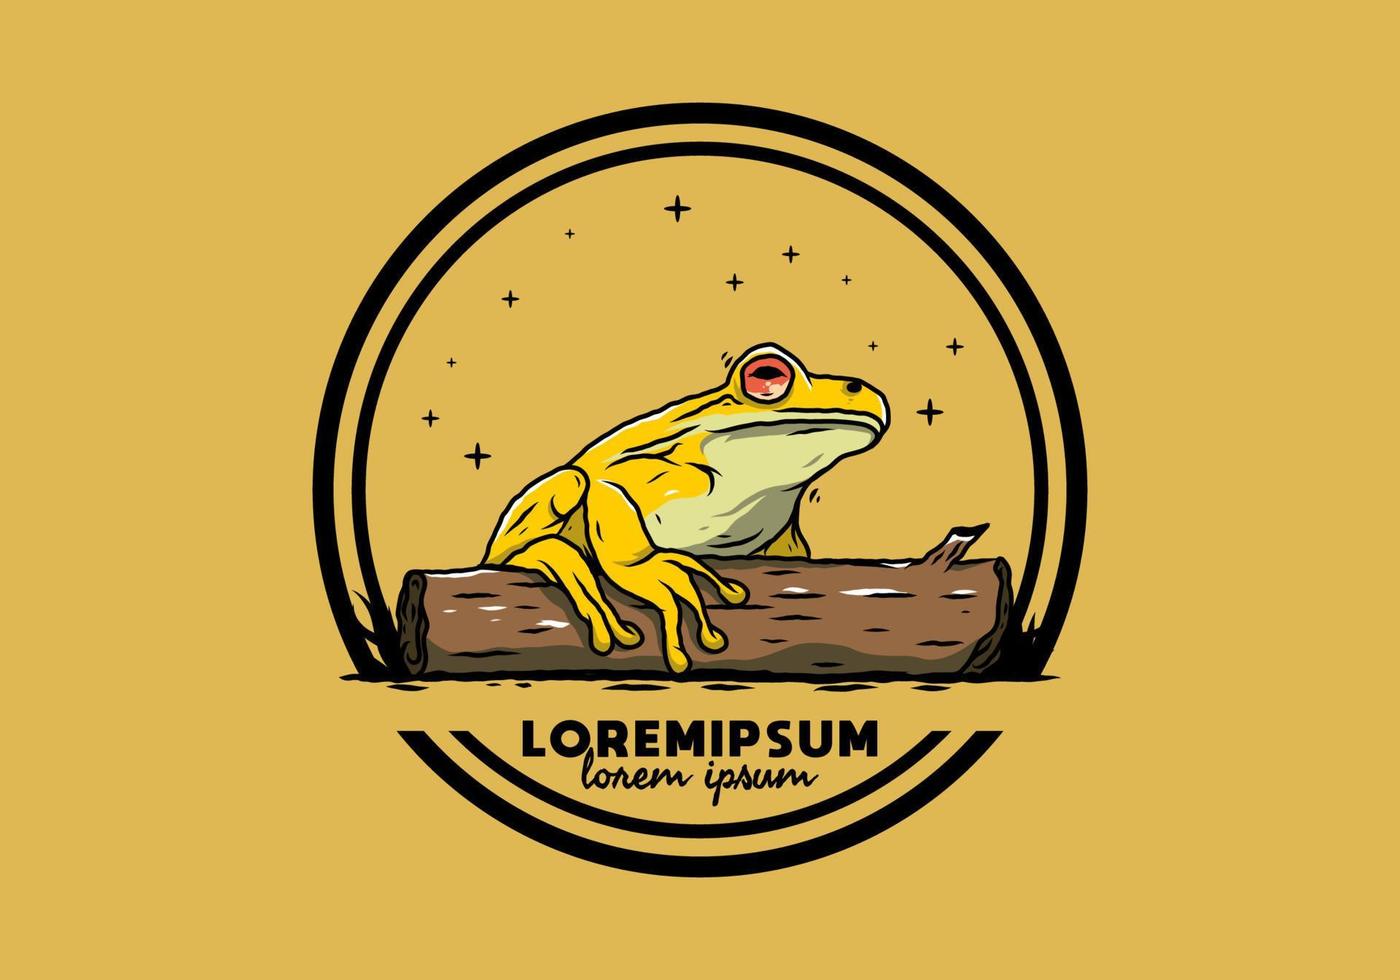 big frog perched on a log illustration vector